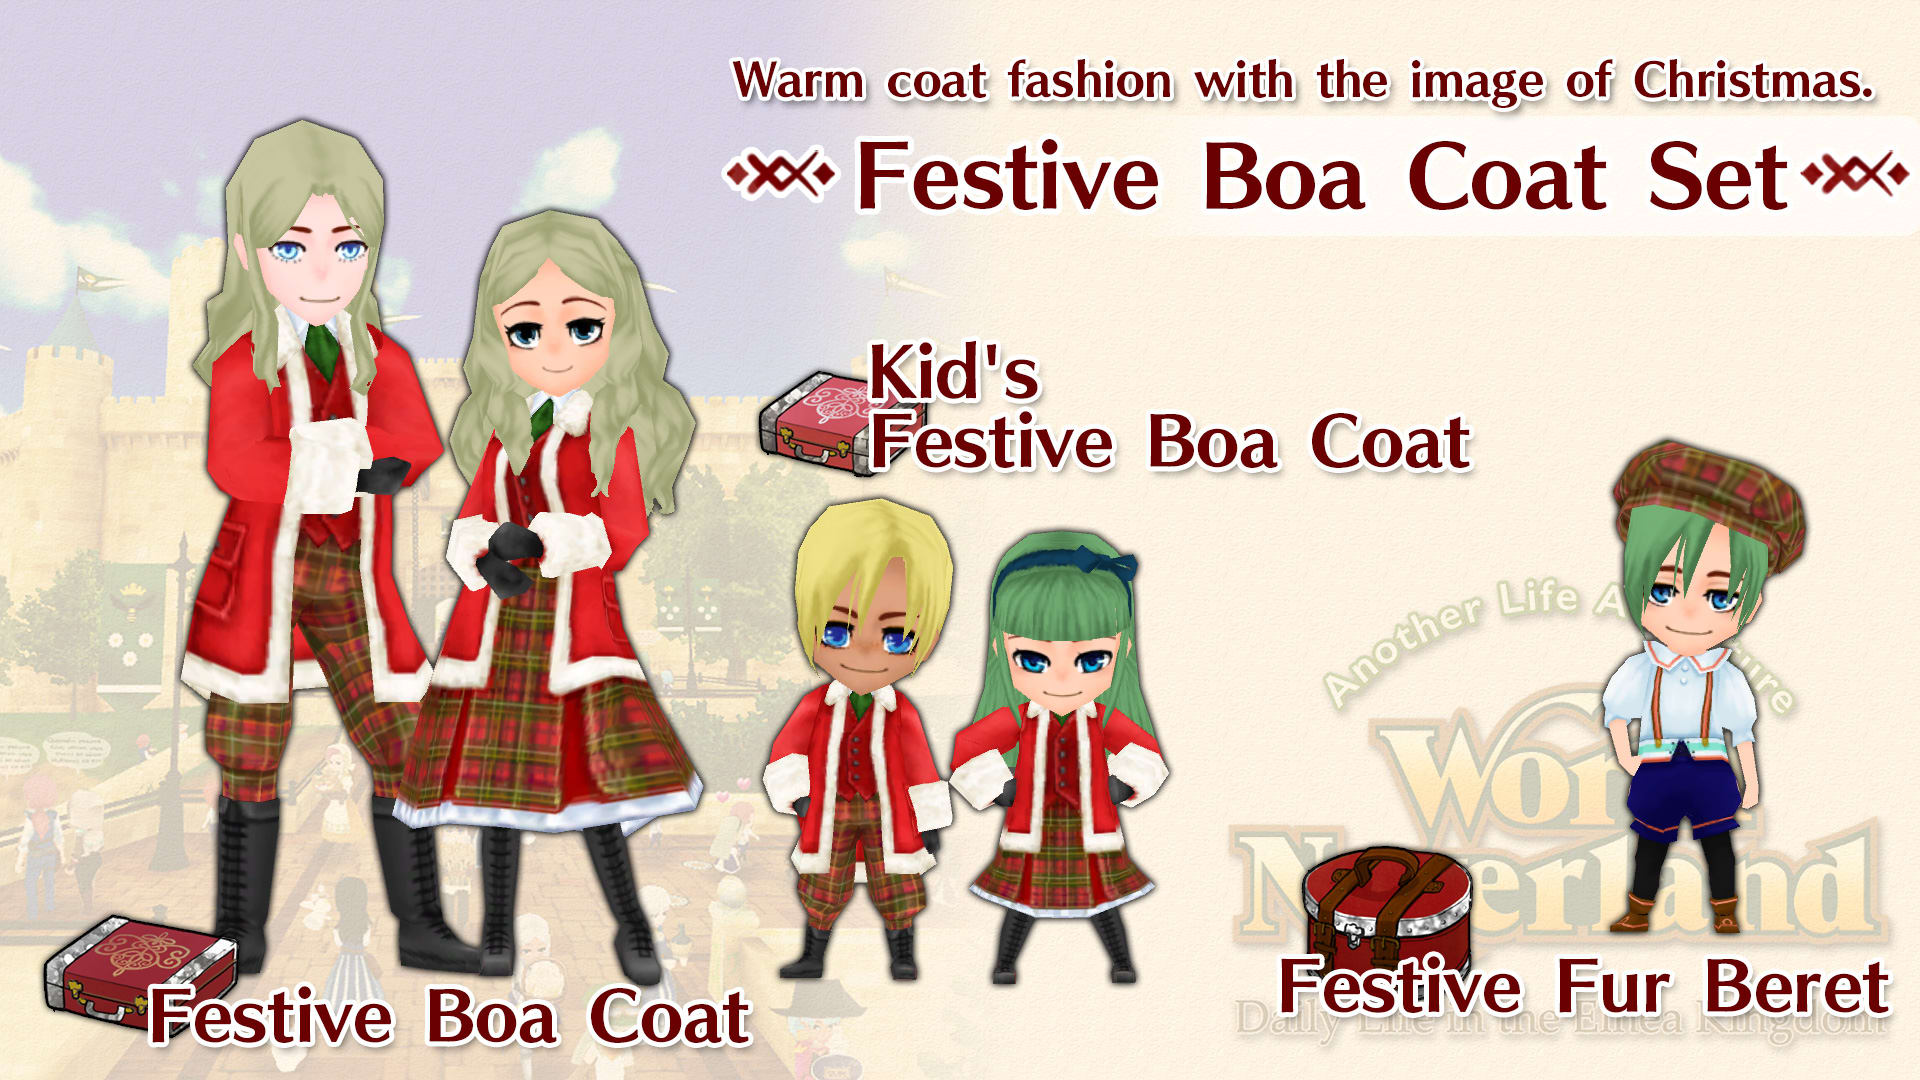 Festive Boa Coat Set